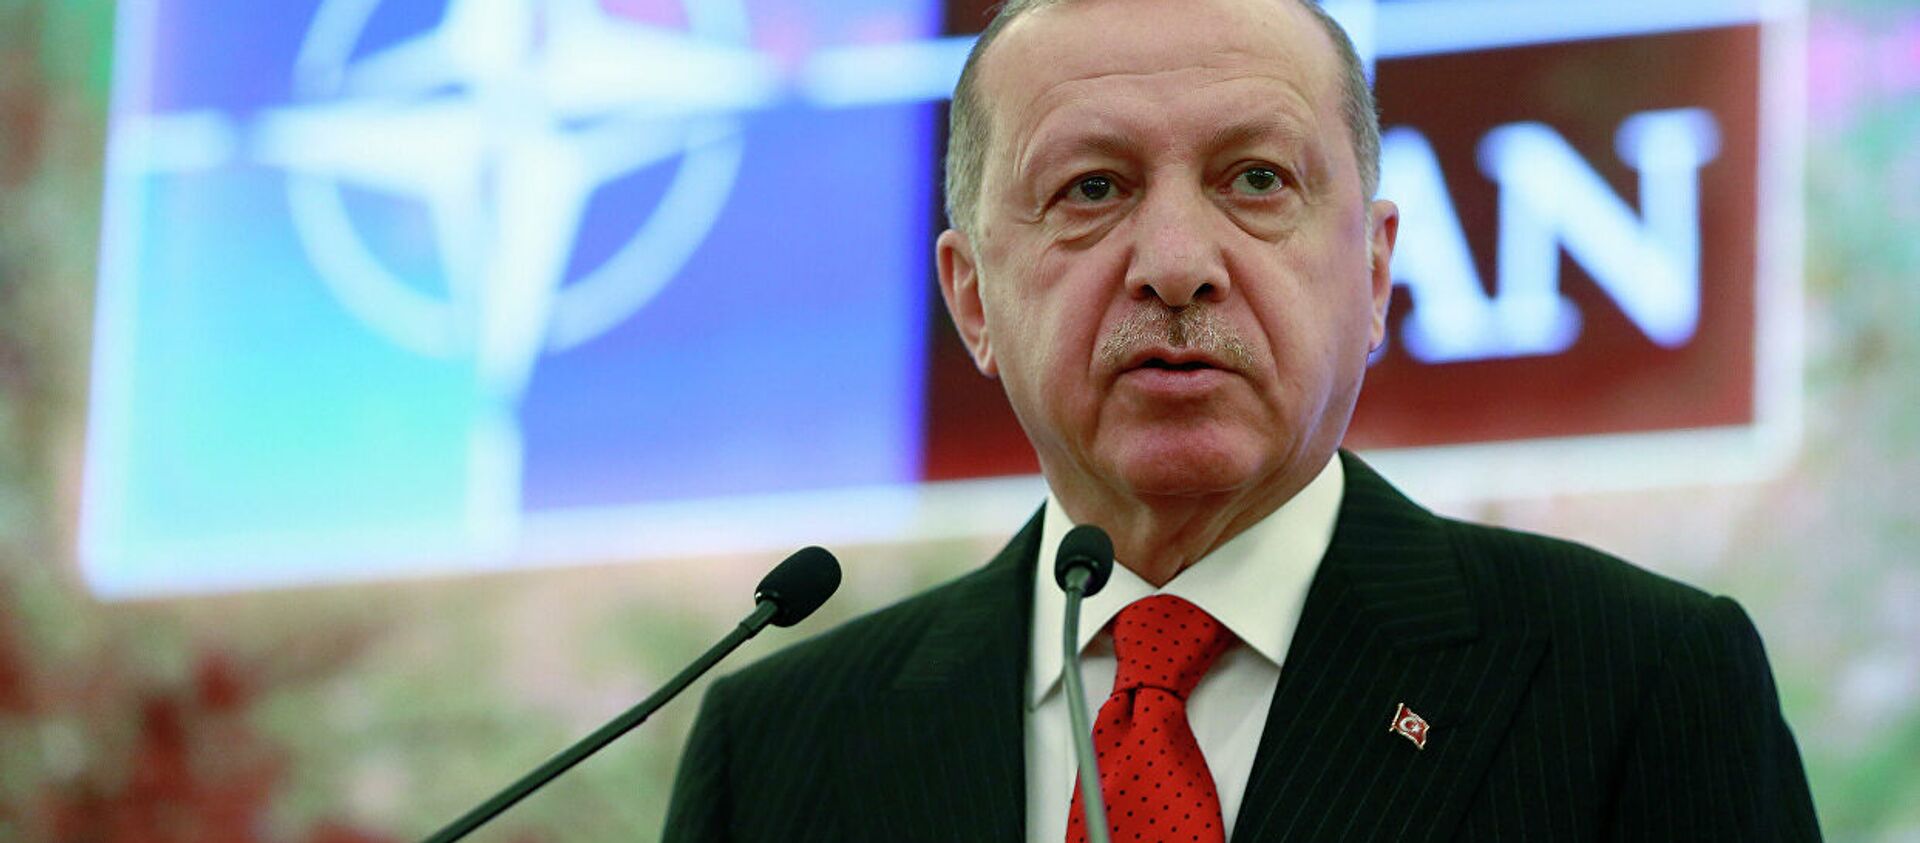 Президент Турции Реджеп Тайип Эрдоган выступает на заседании НАТО в Анкаре - Sputnik Абхазия, 1920, 08.09.2019